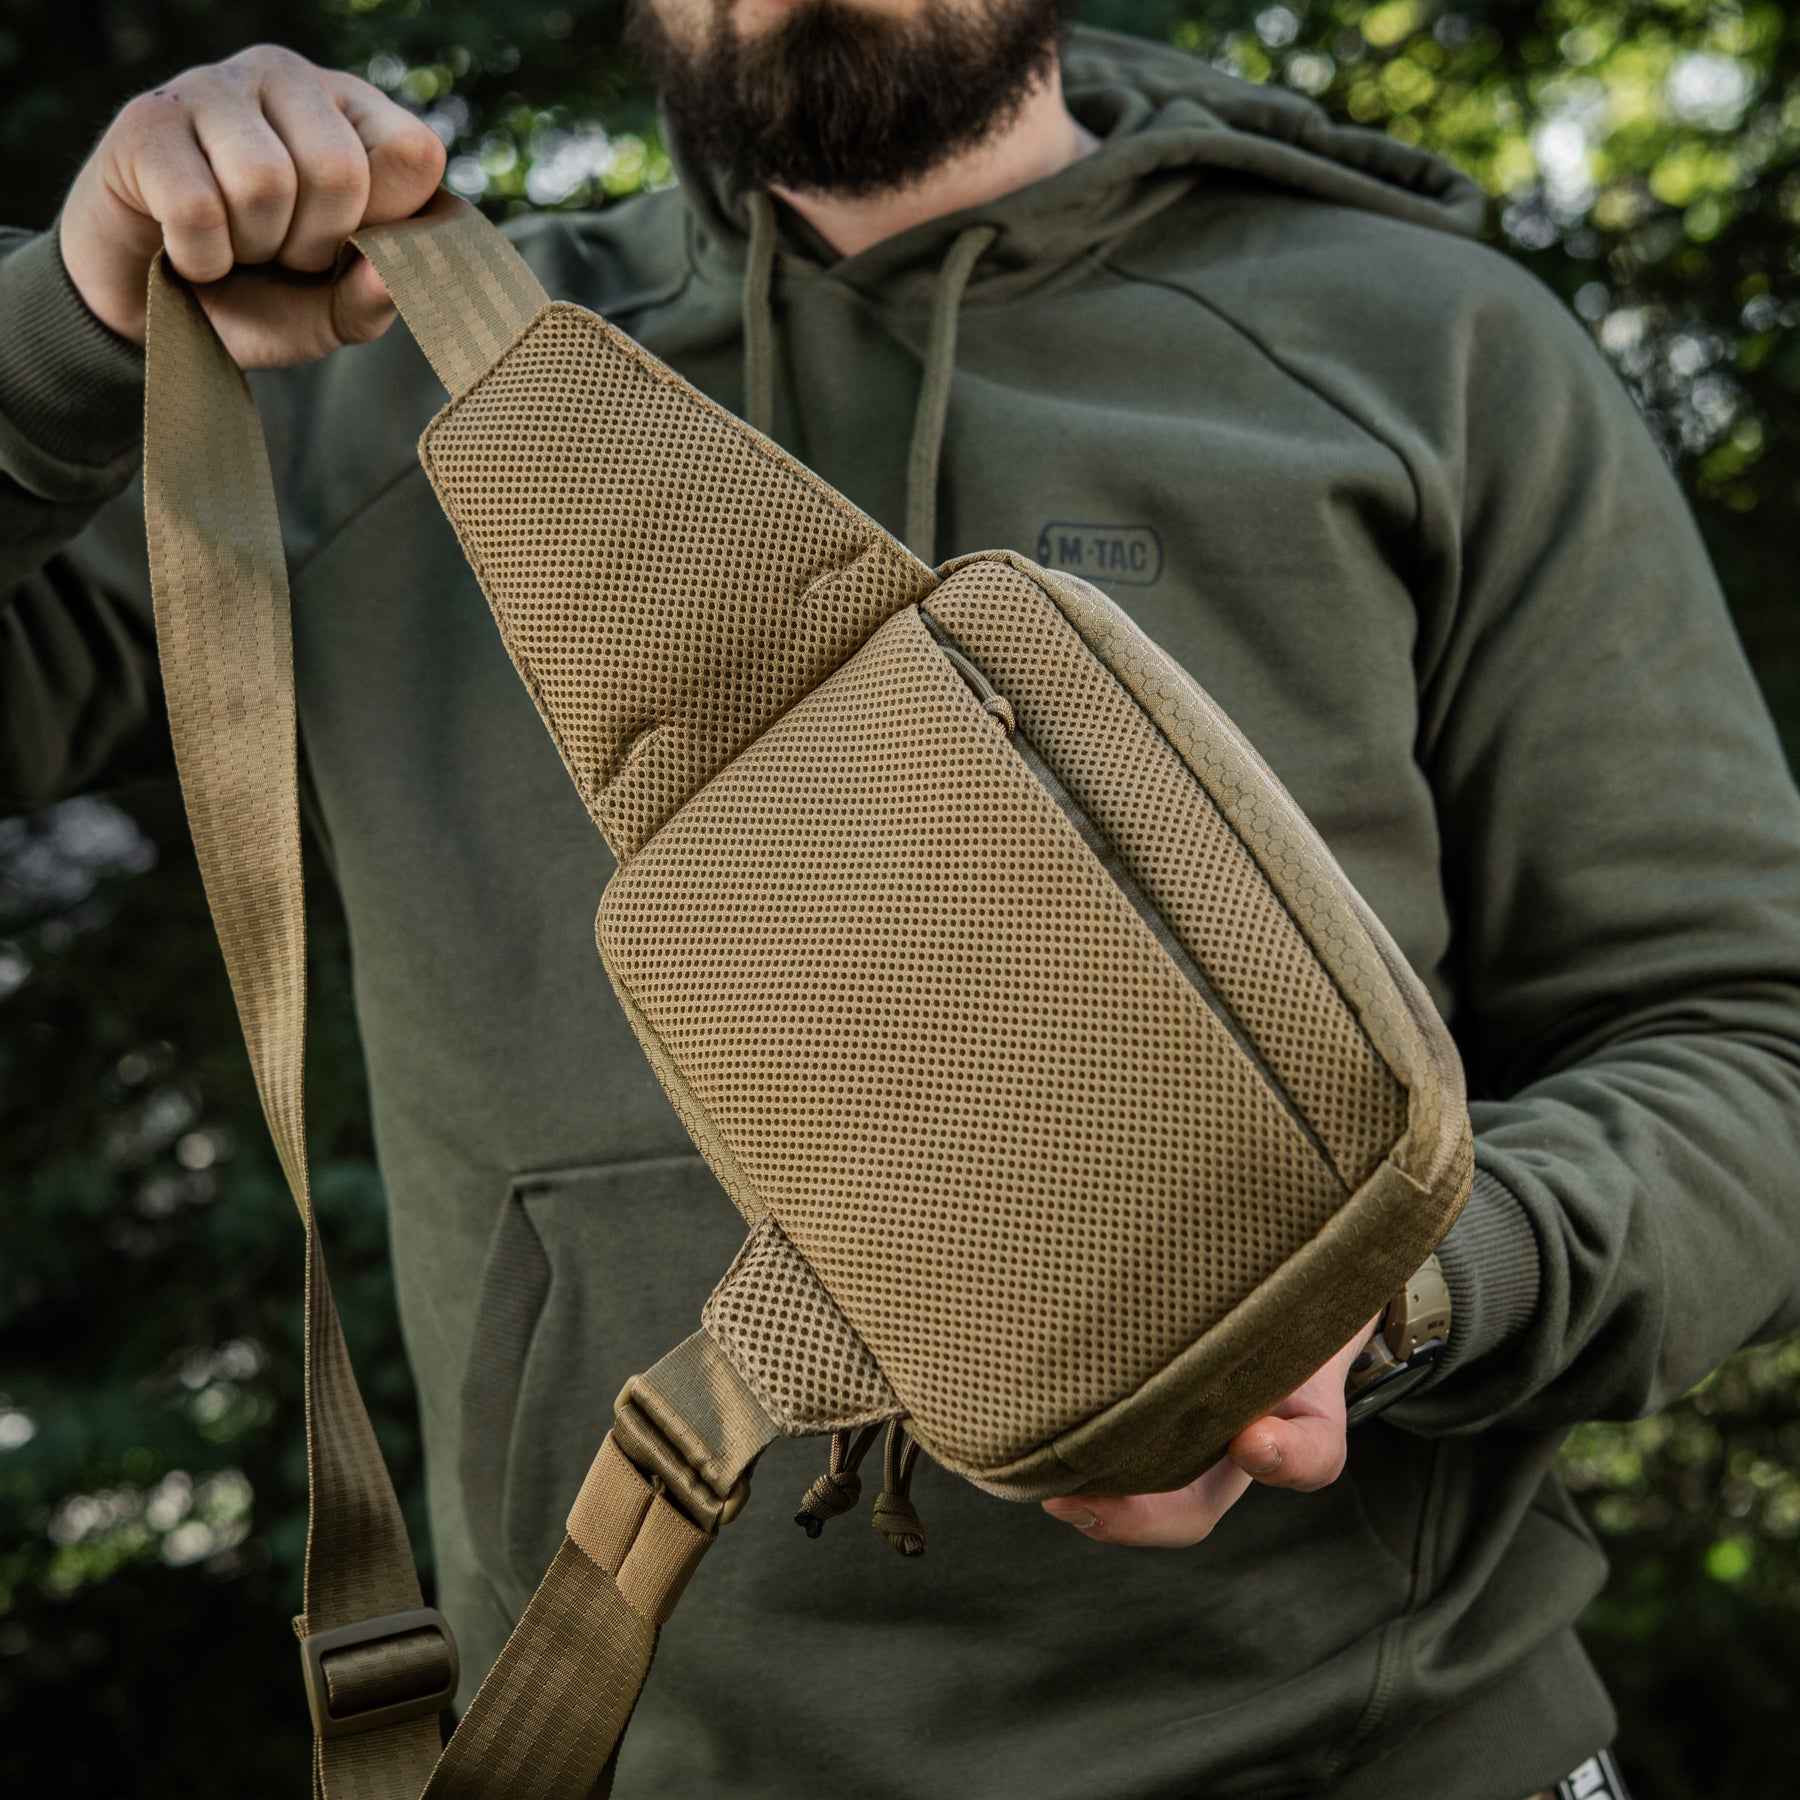 M-Tac Elite Sling Bag with Loop Panel